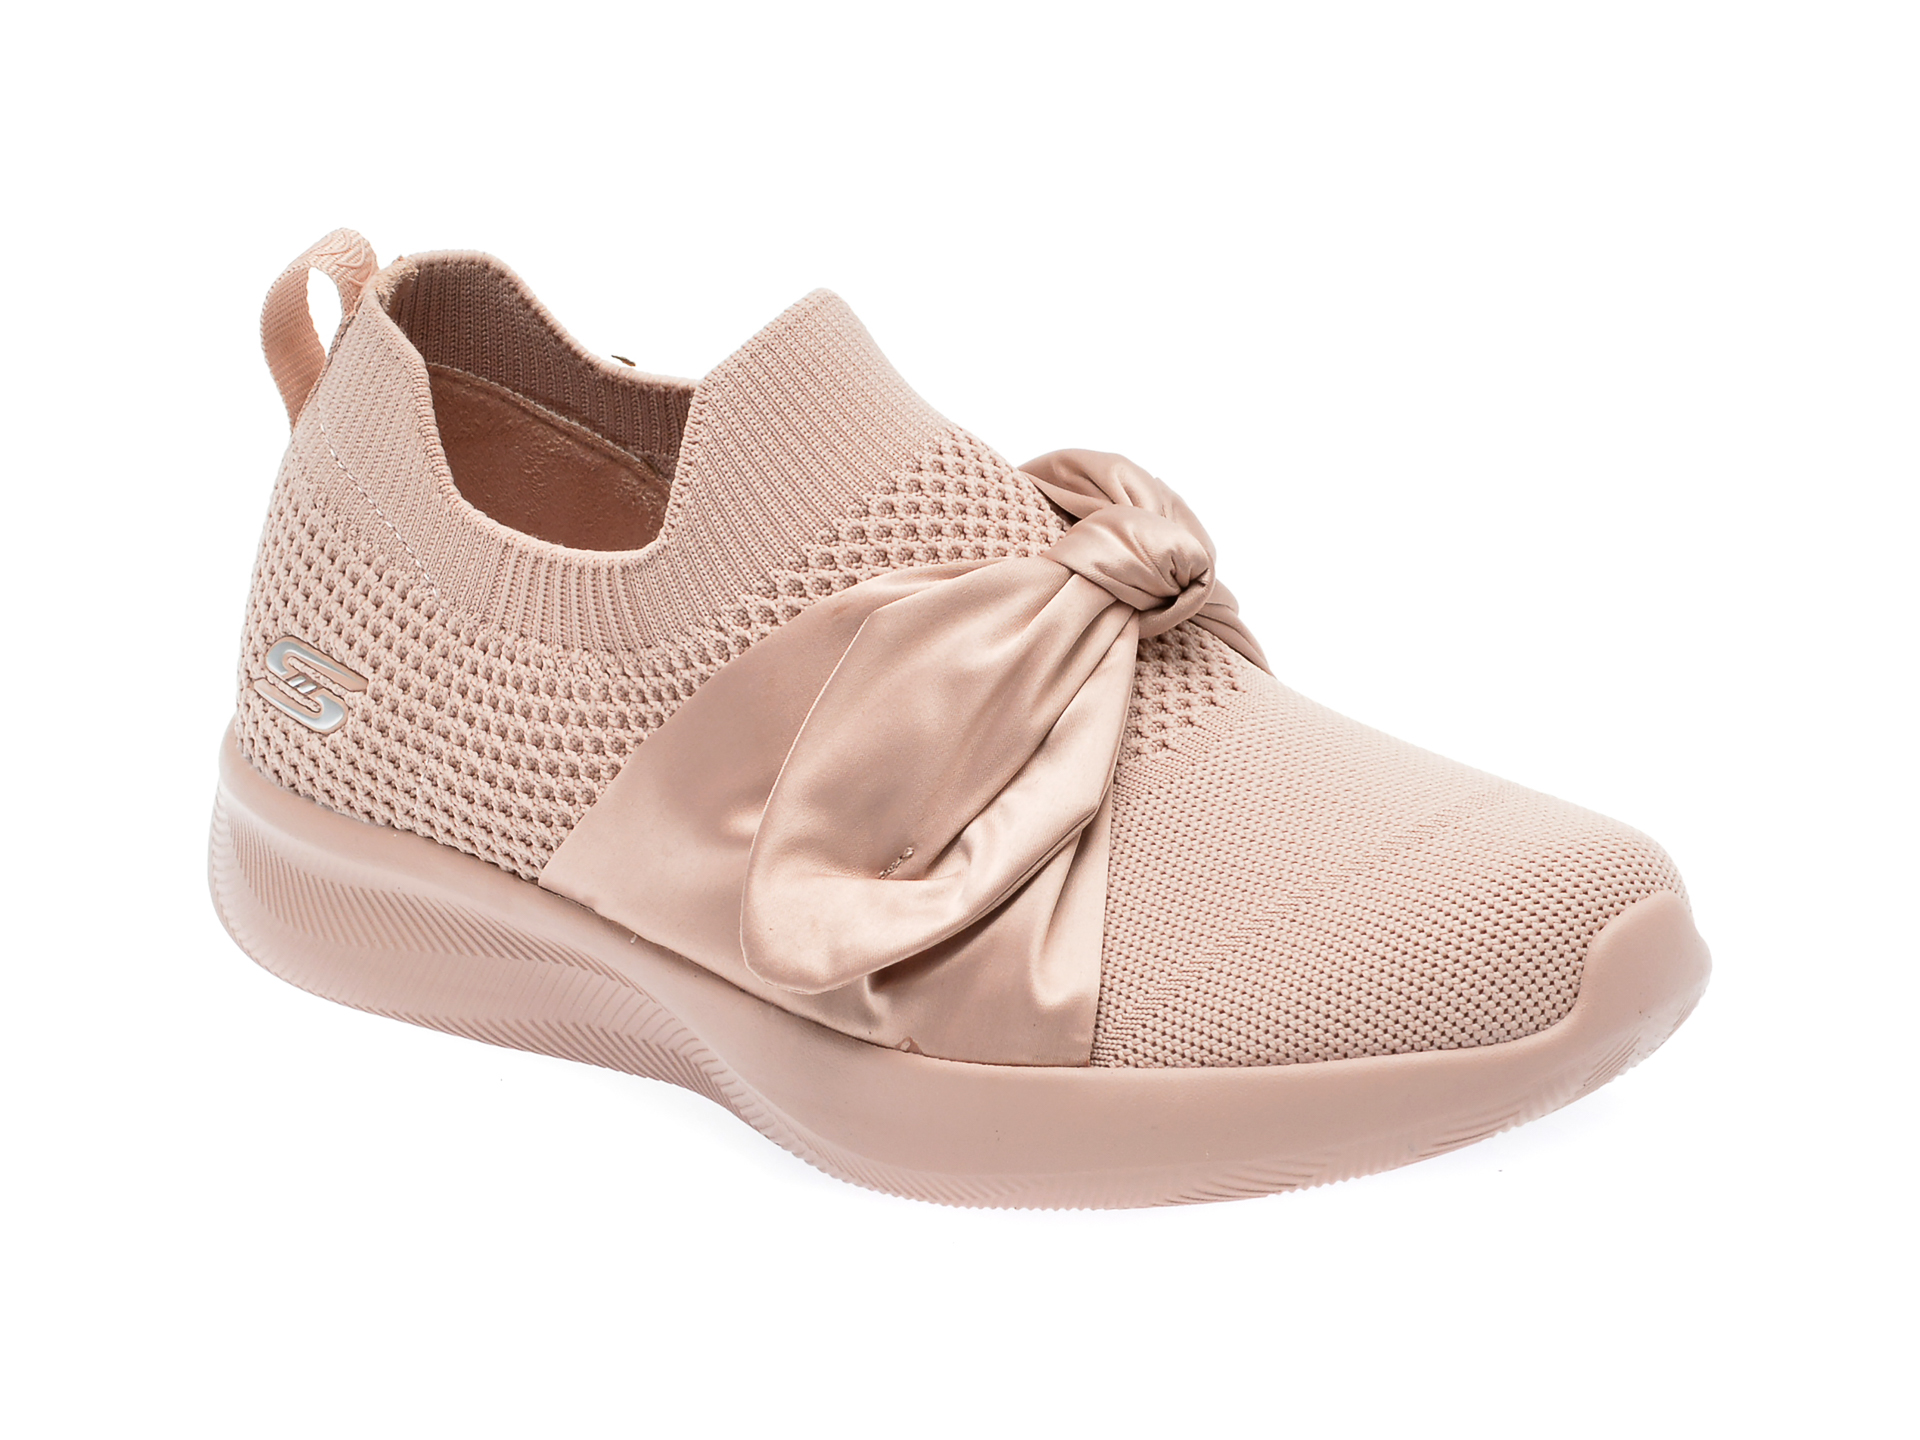 Pantofi SKECHERS roz, BOBS SQUAD 2, din material textil femei 2023-09-21